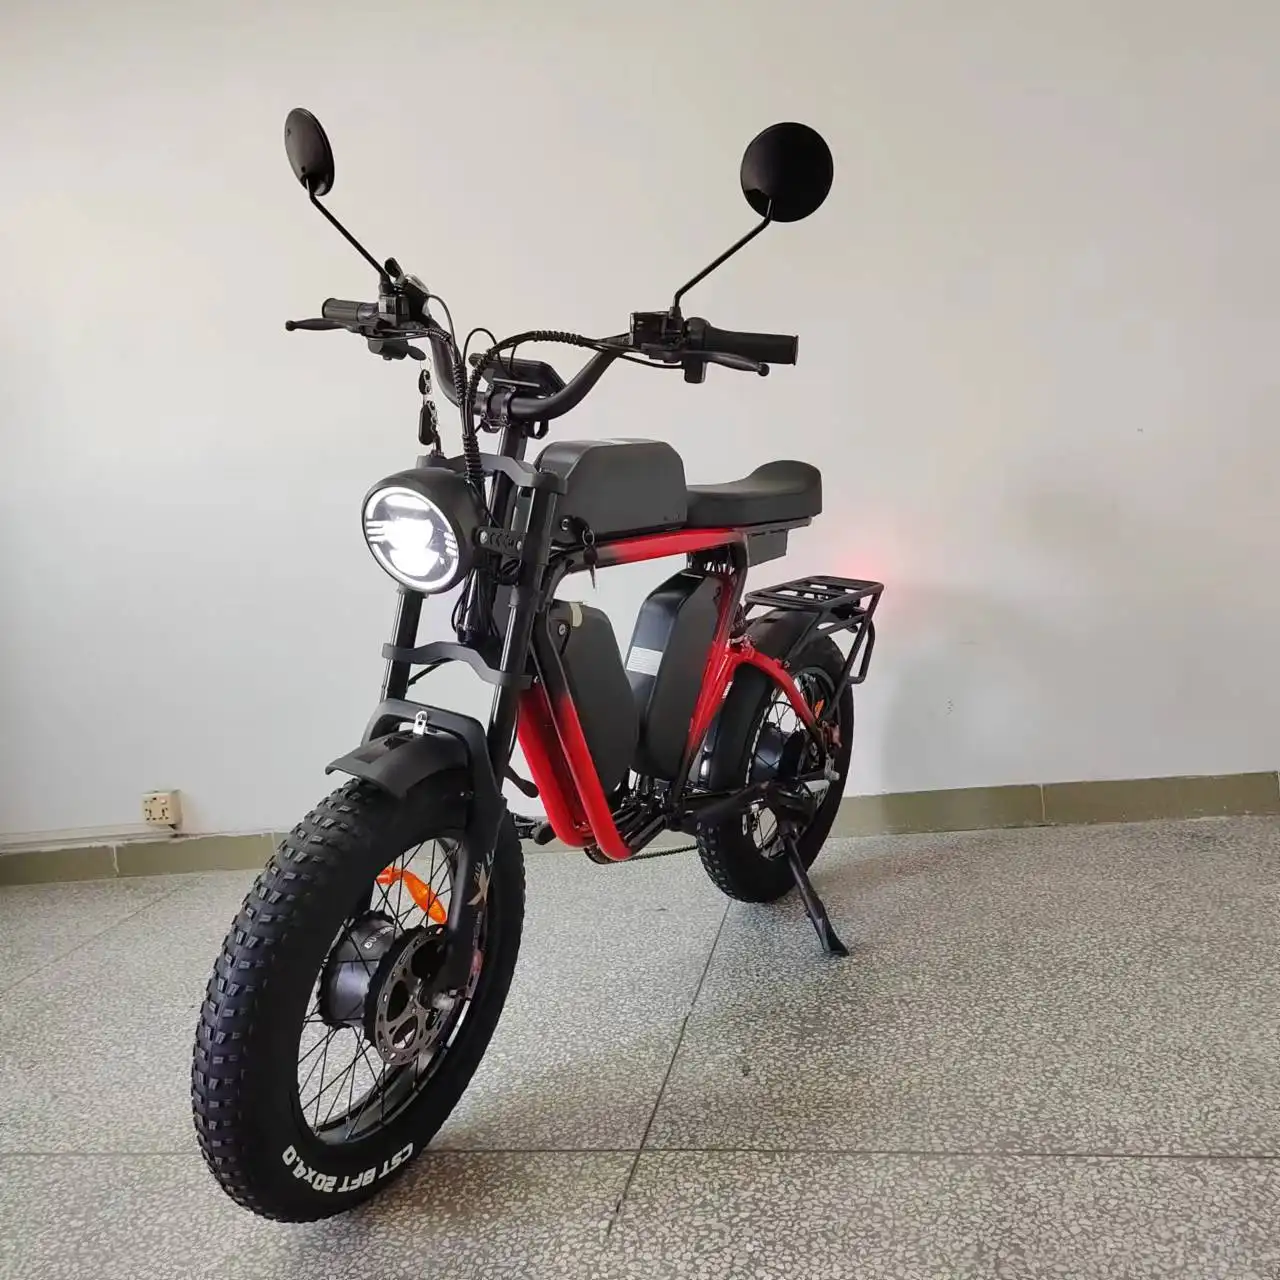 Bafang-bicicleta eléctrica de doble Motor de 52V, bici con Triple batería, 66Ah, freno de aceite, suspensión completa, MTB, 55kmh, neumático ancho